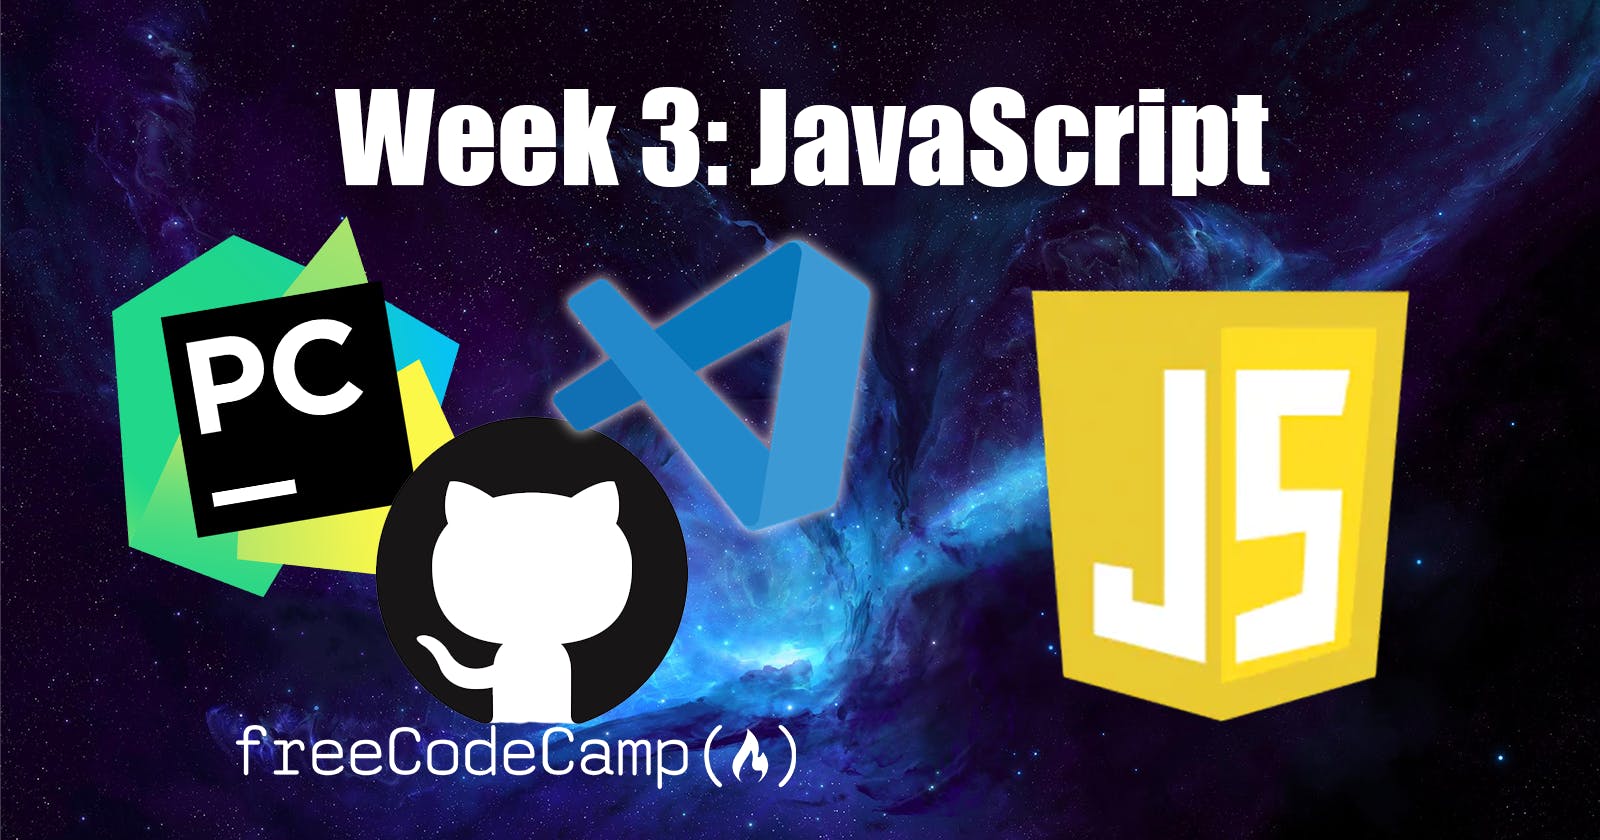 Journey to Fullstack - Week 3: Javascript